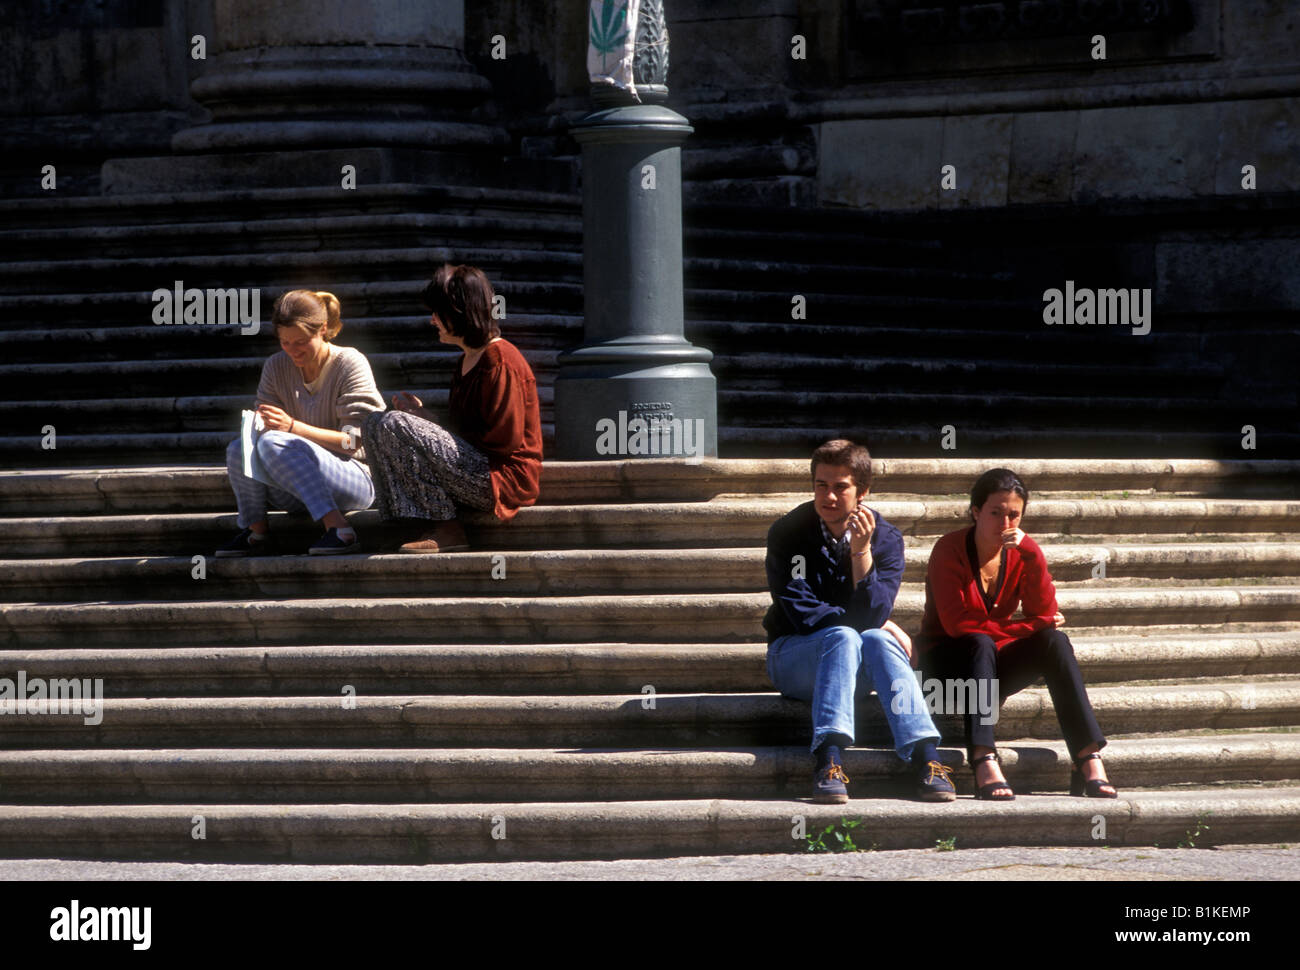 Españoles, estudiantes, hablando, estudiando, Anaya College, Salamanca, provincia de Salamanca, Castilla y León, España, Europa Foto de stock